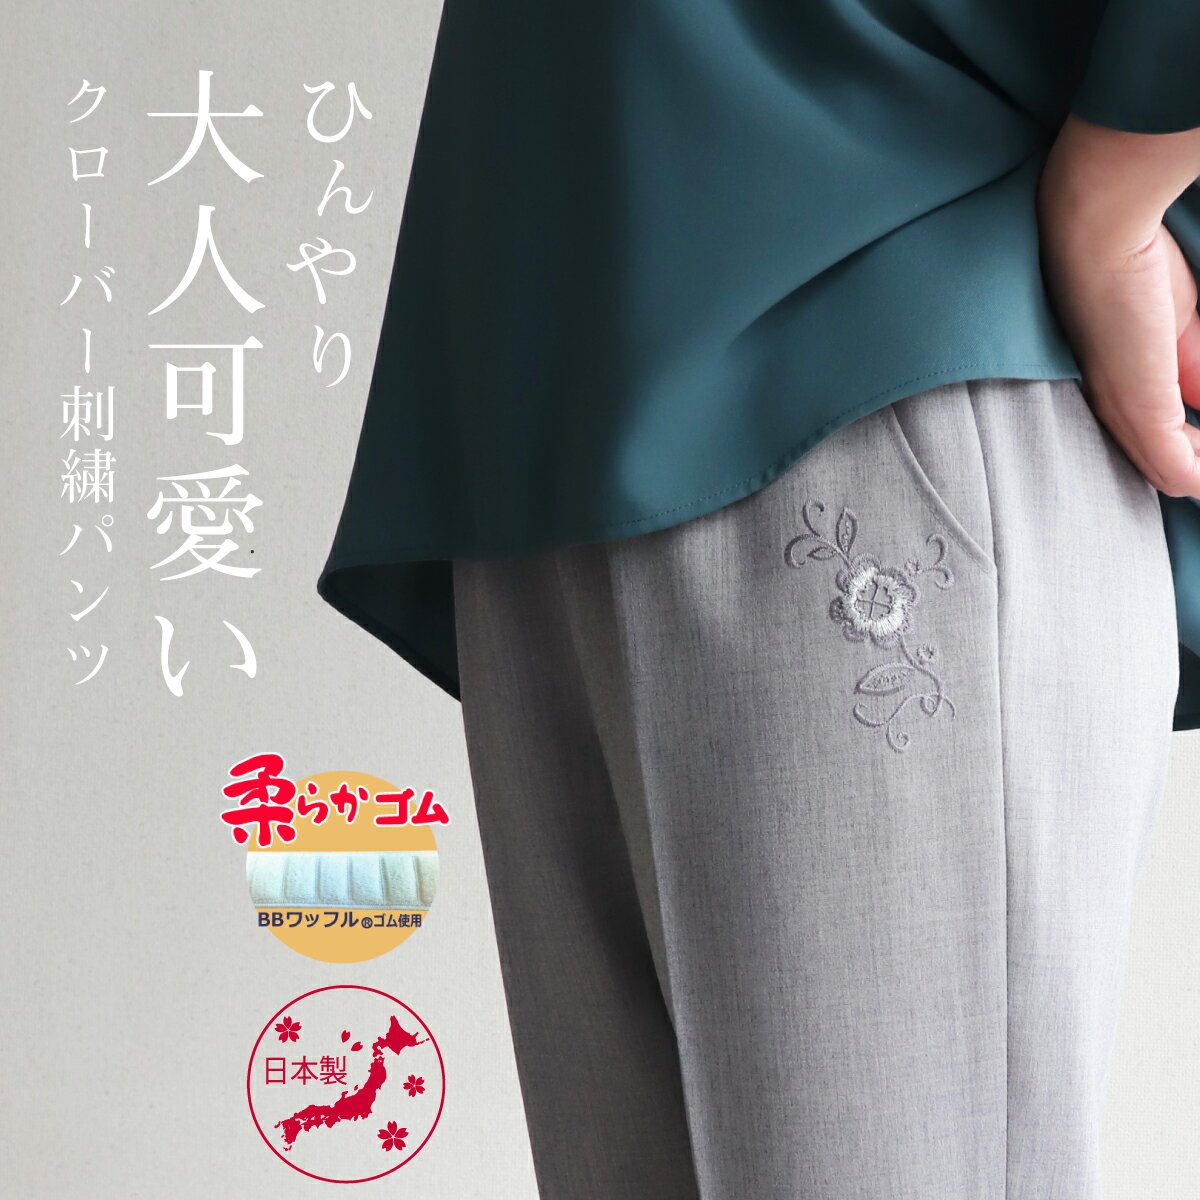 【日本製】 ポケットにワンポイントのクローバー刺繍を施した夏用パン...